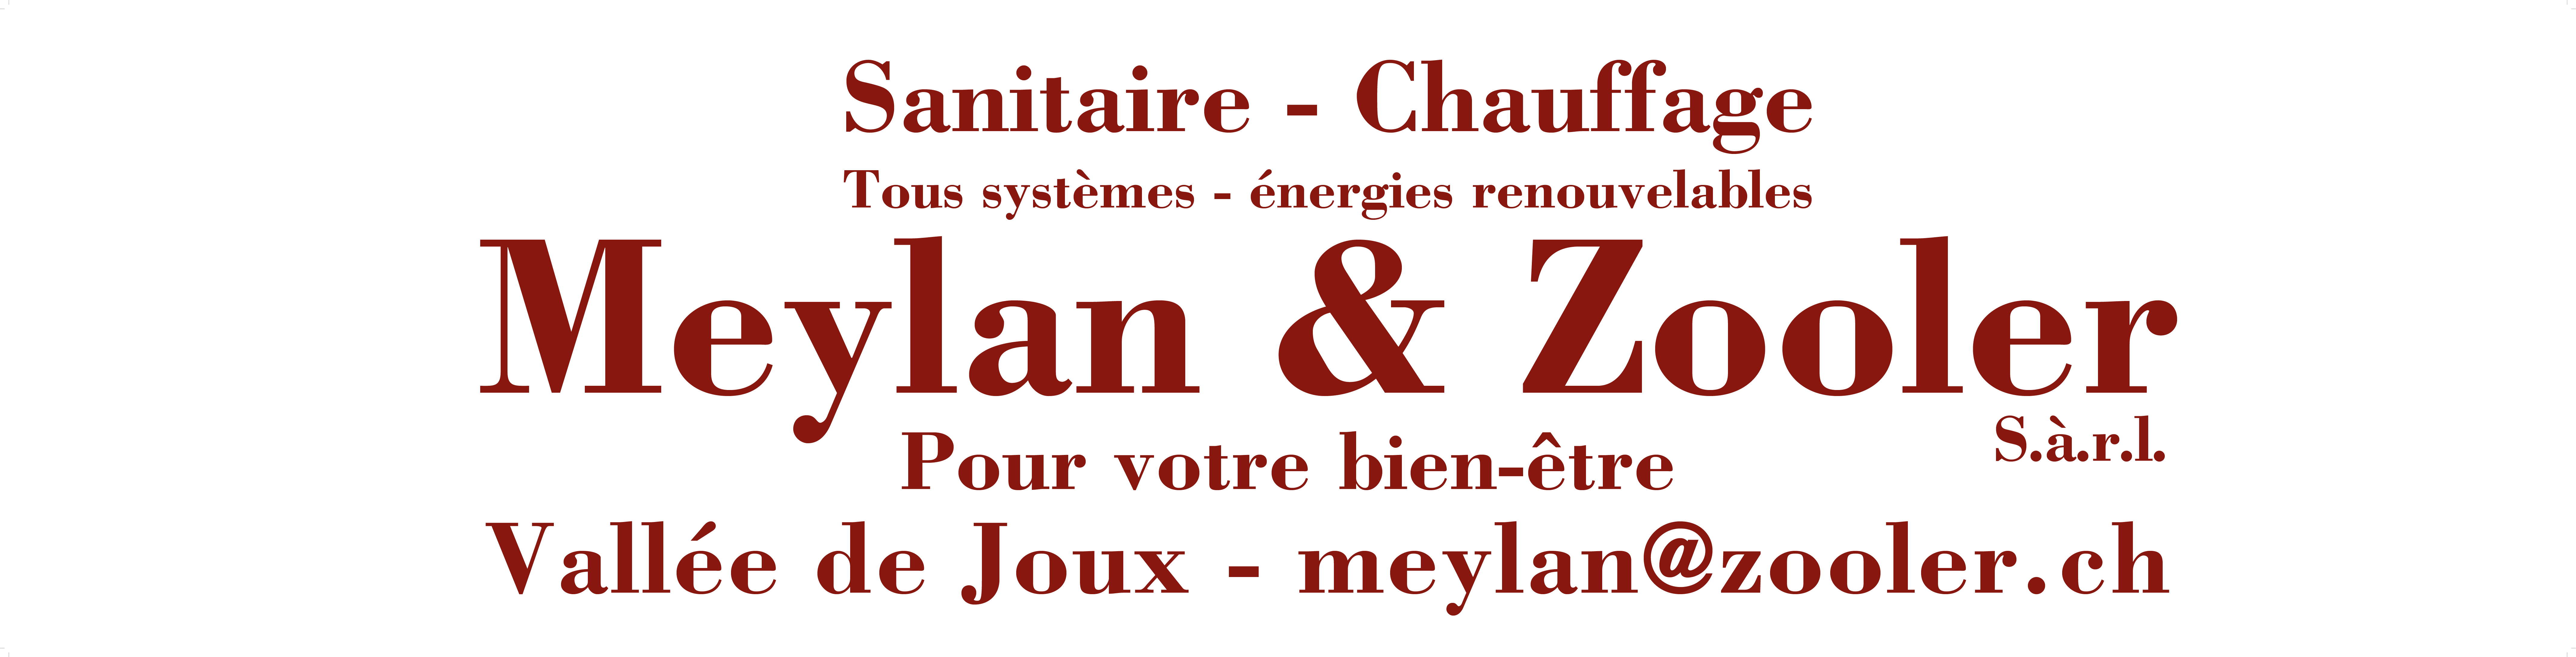 Meylan & Zooler Sanitaire-Chauffage